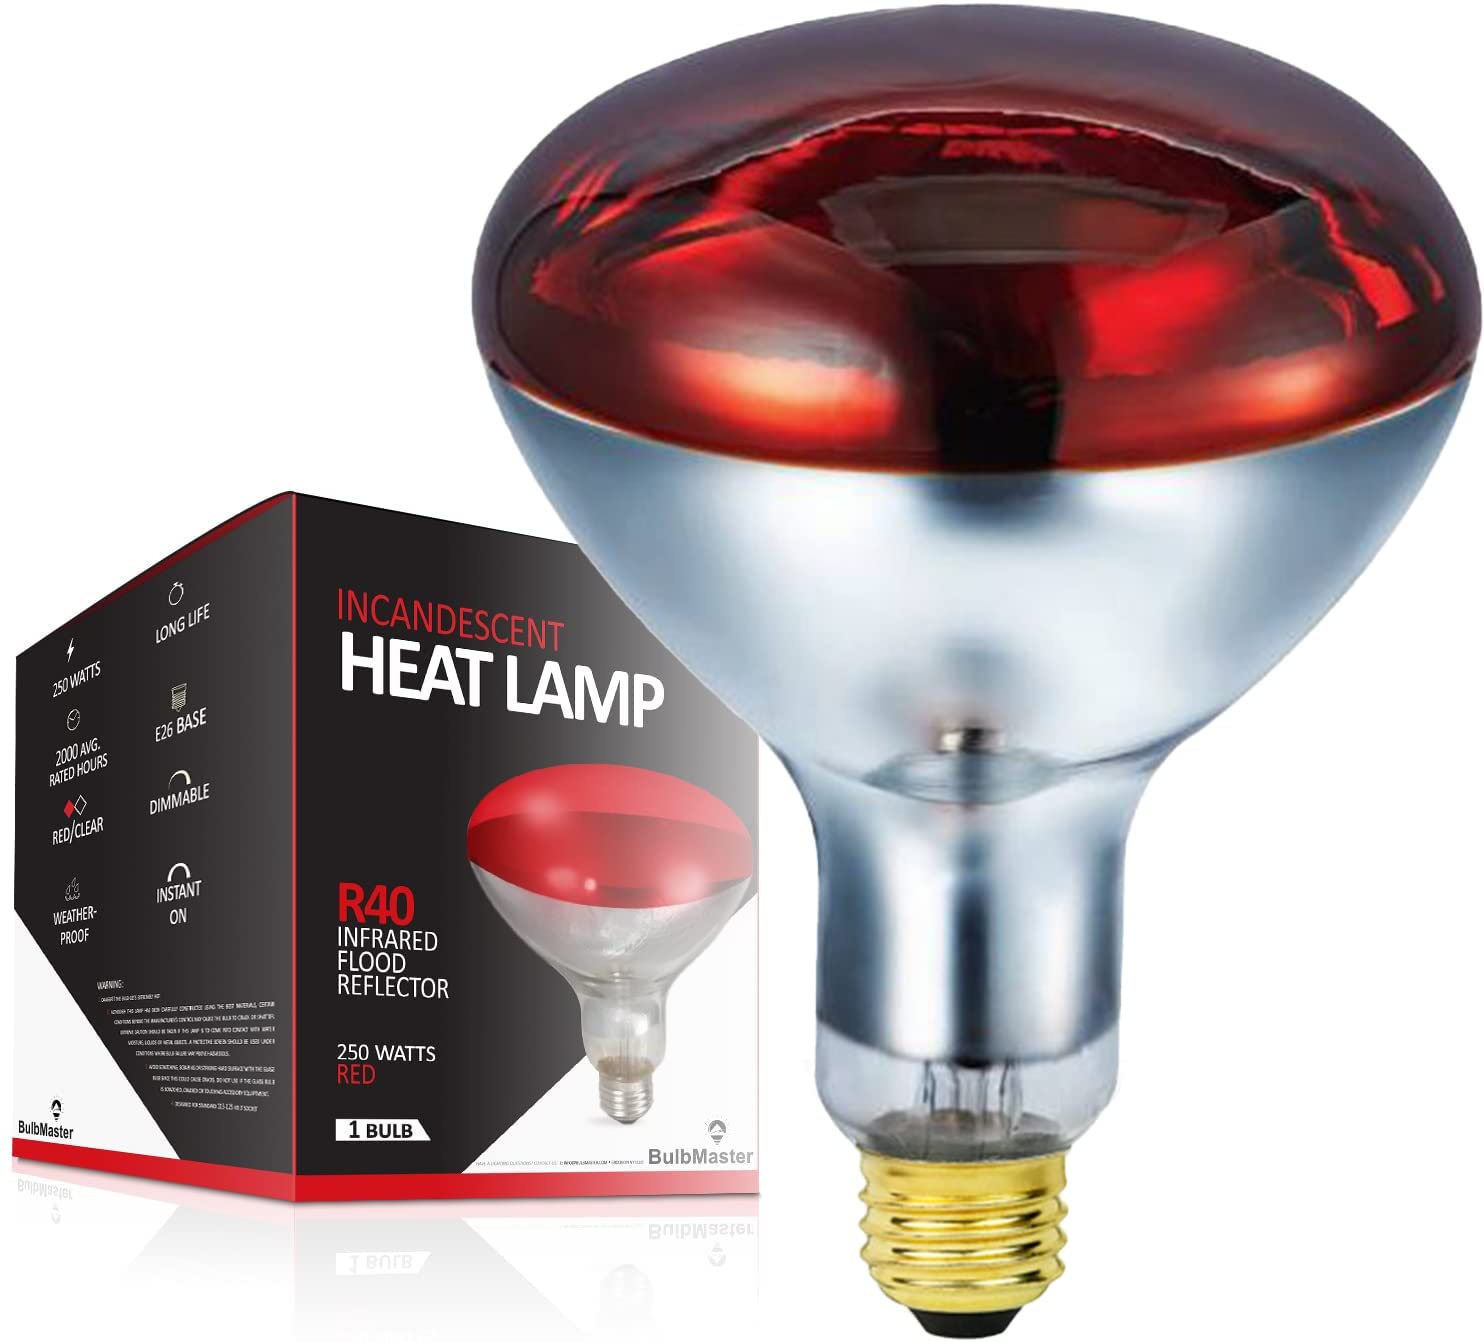 Heatlamp bulb